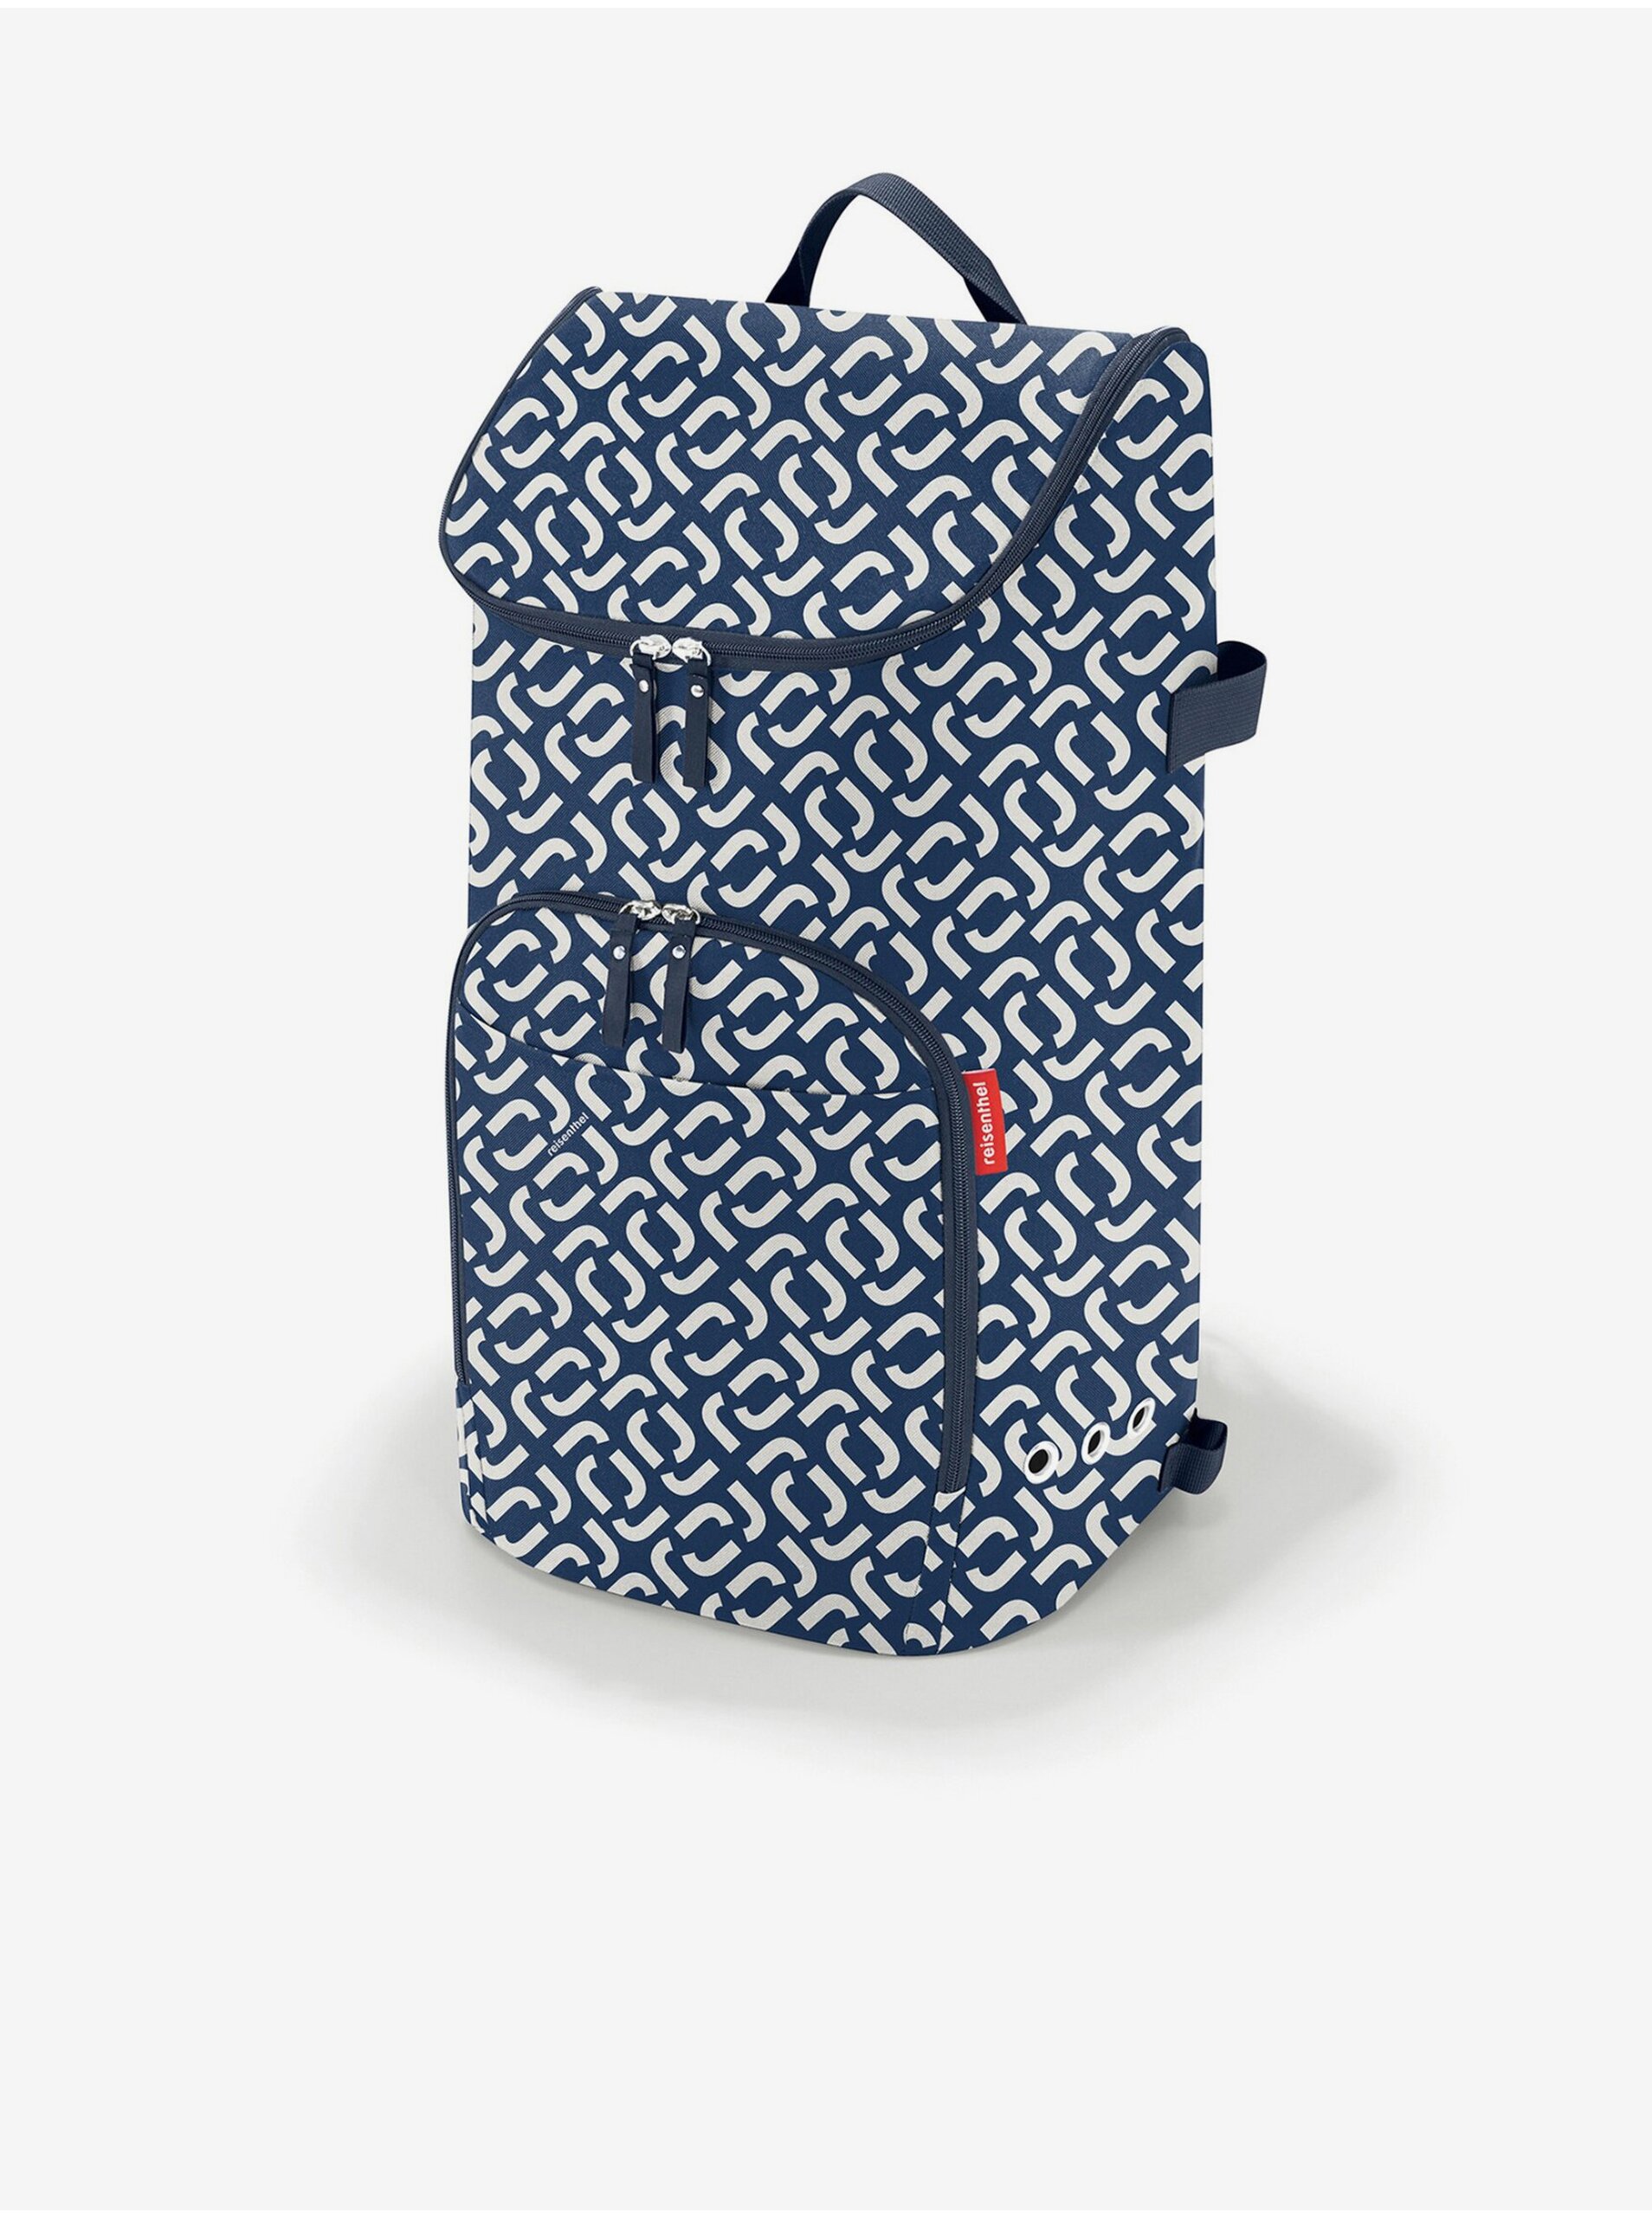 E-shop Bielo-modrá vzorovaná nákupná taška Reisenthel Citycruiser Bag Signature Navy